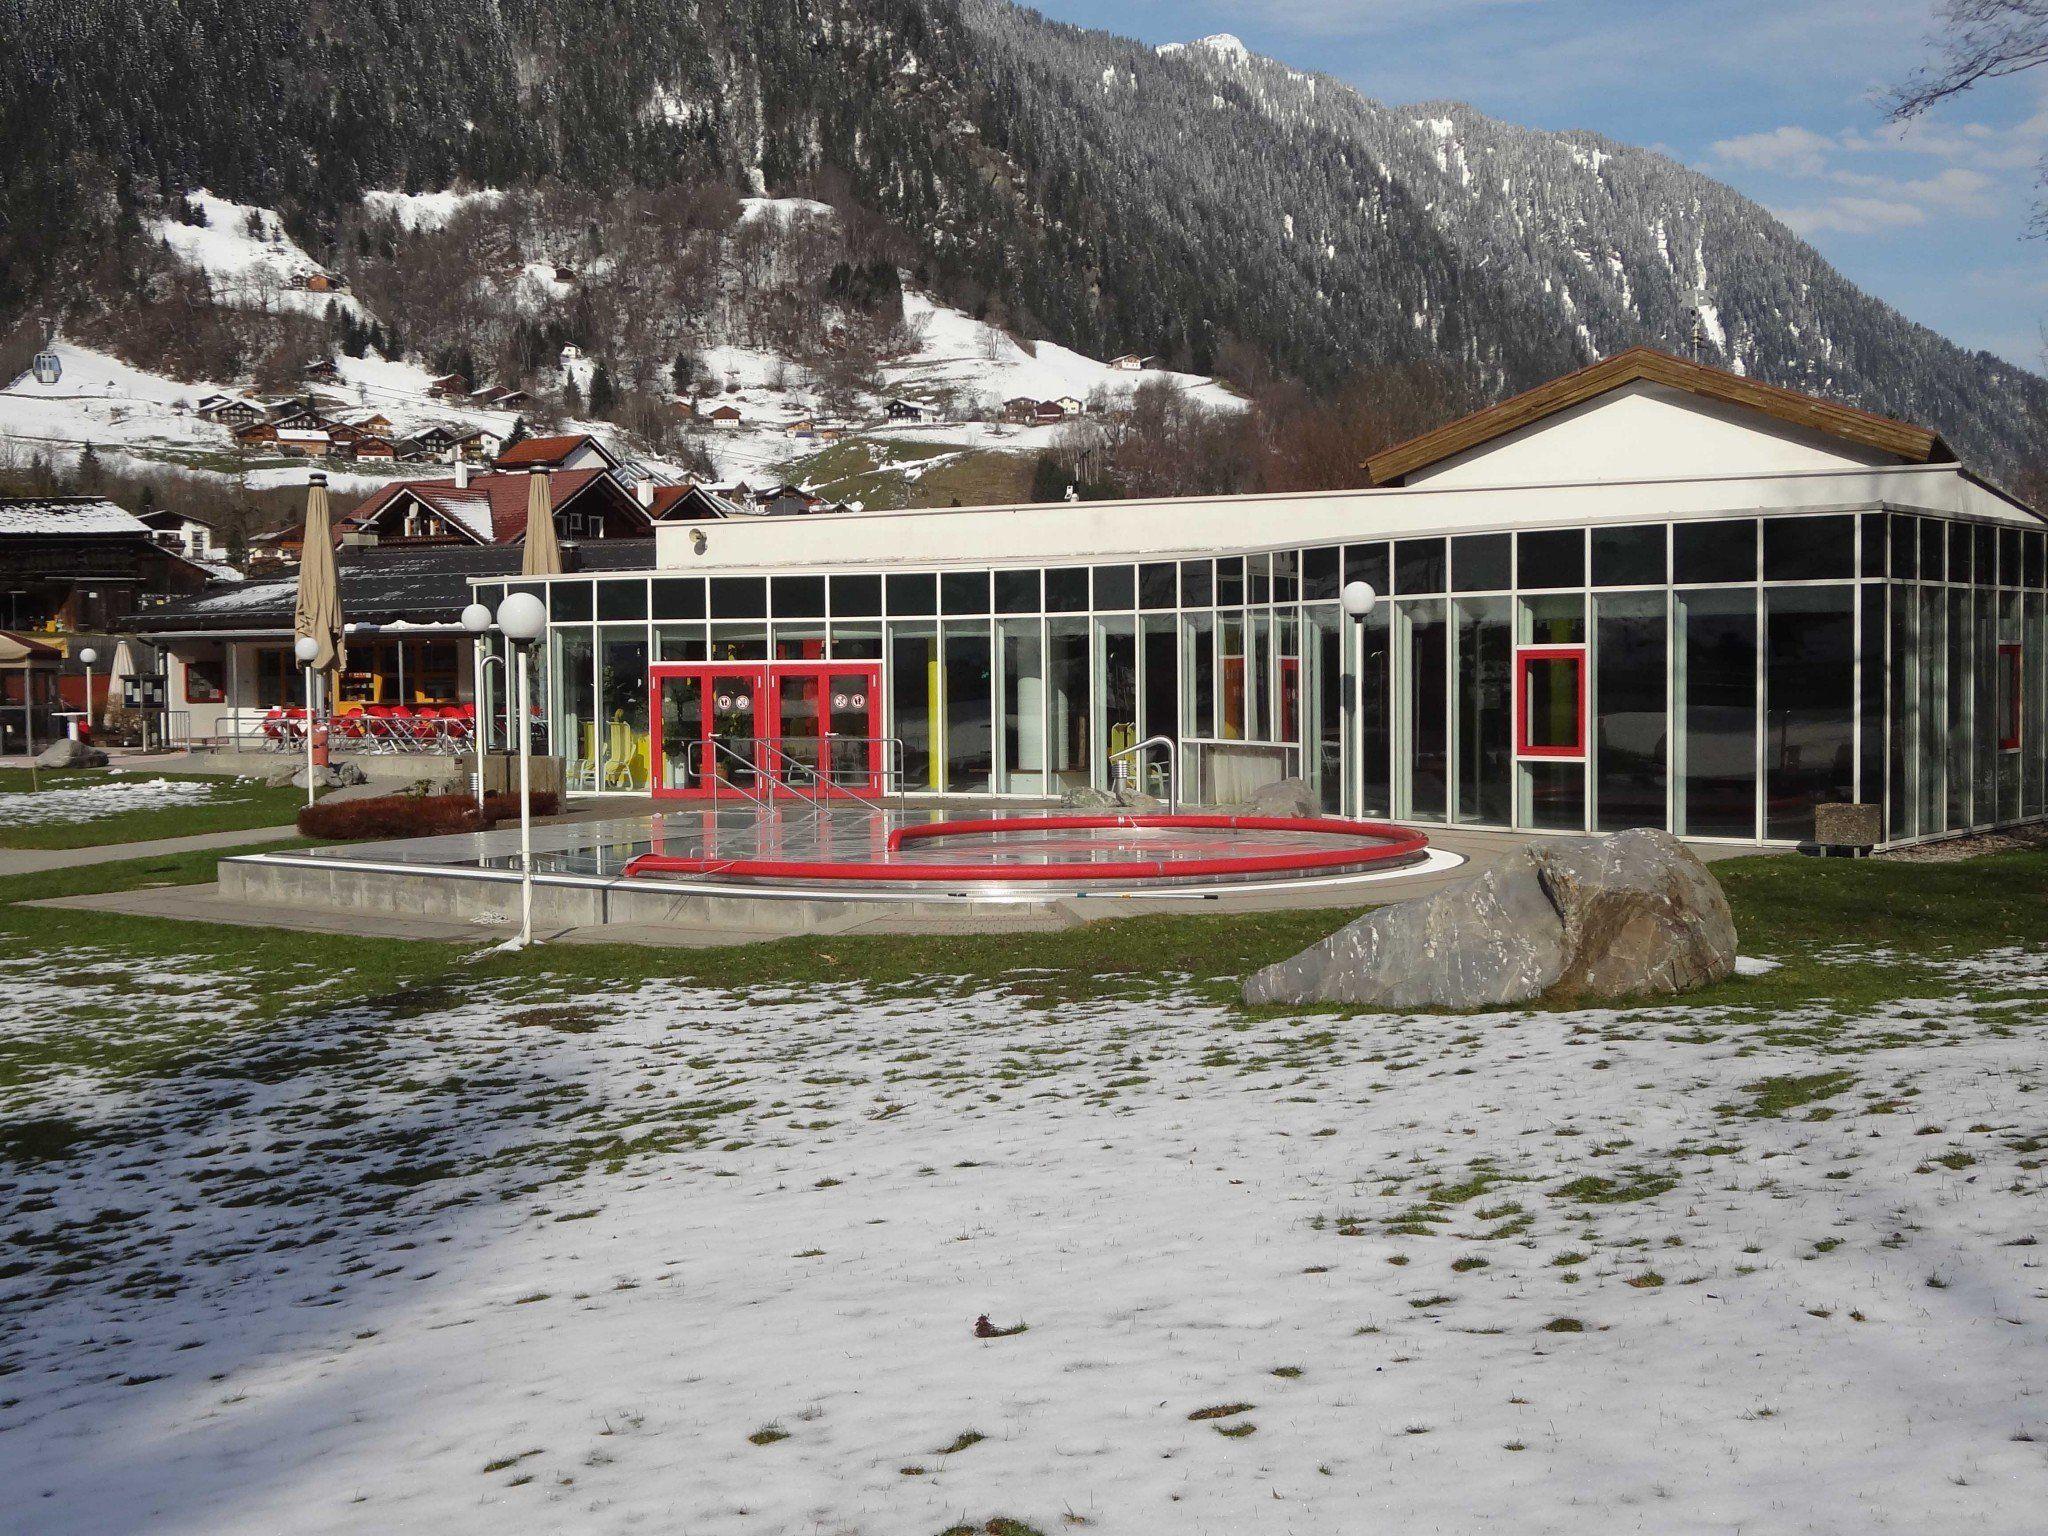 Winterlicher Badespaß, täglich bis Ostern im Allwetterbad Aquarena in St. Gallenkirch